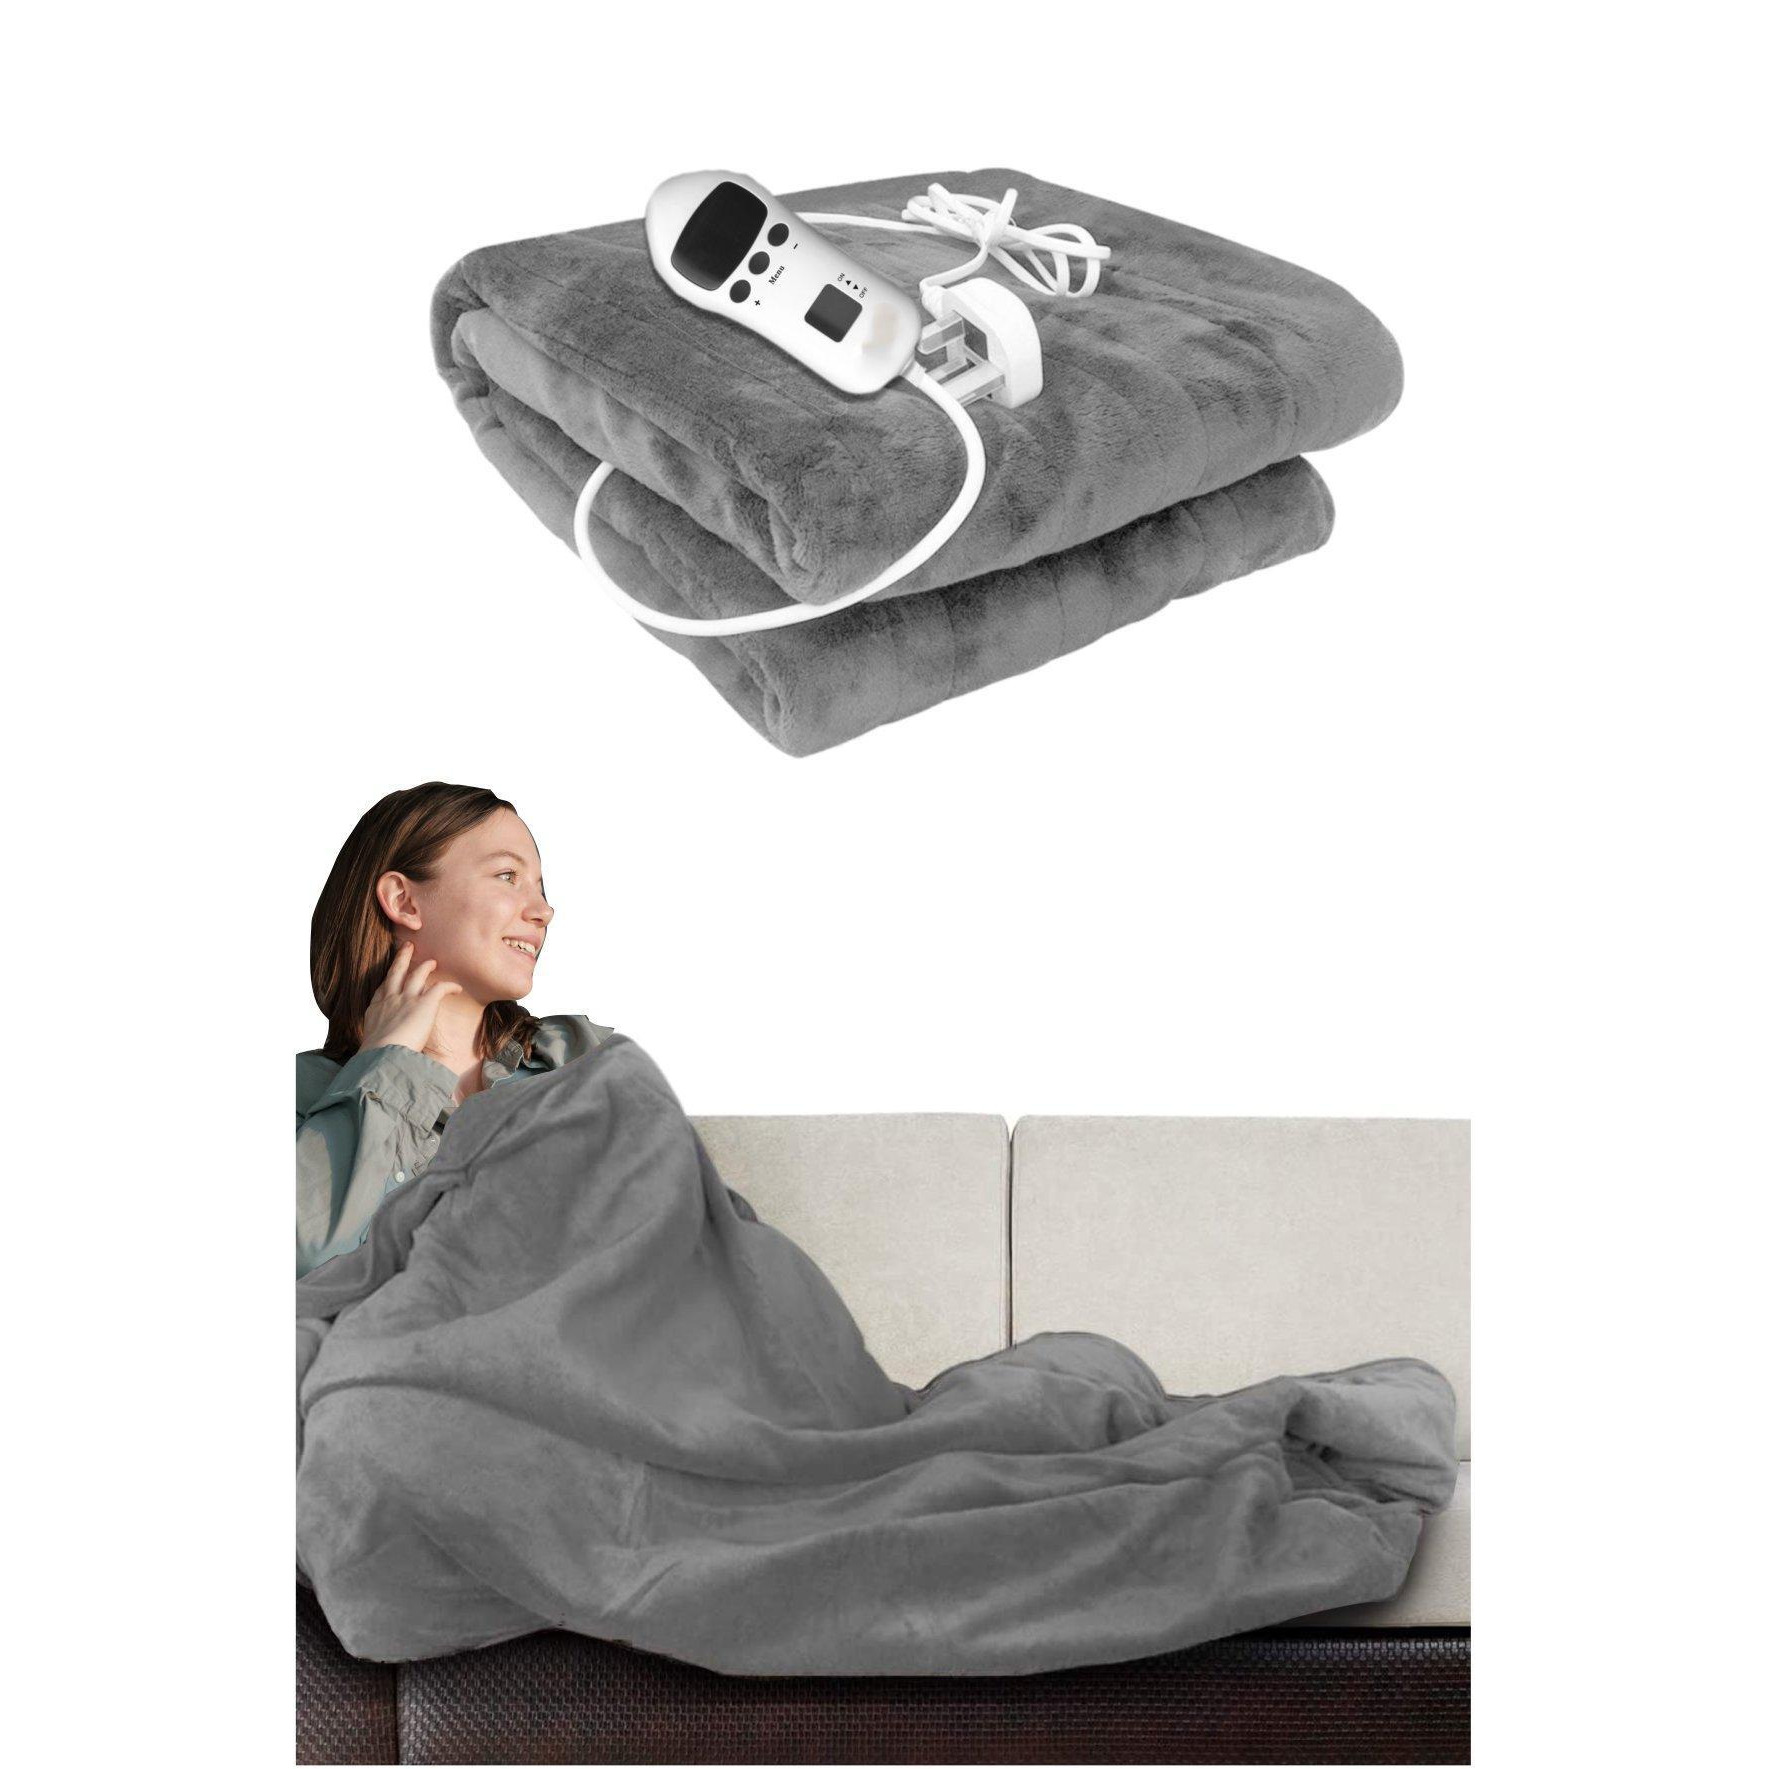 Cosy Heated Over Throw Fleece Blanket With Adjustable Control - image 1